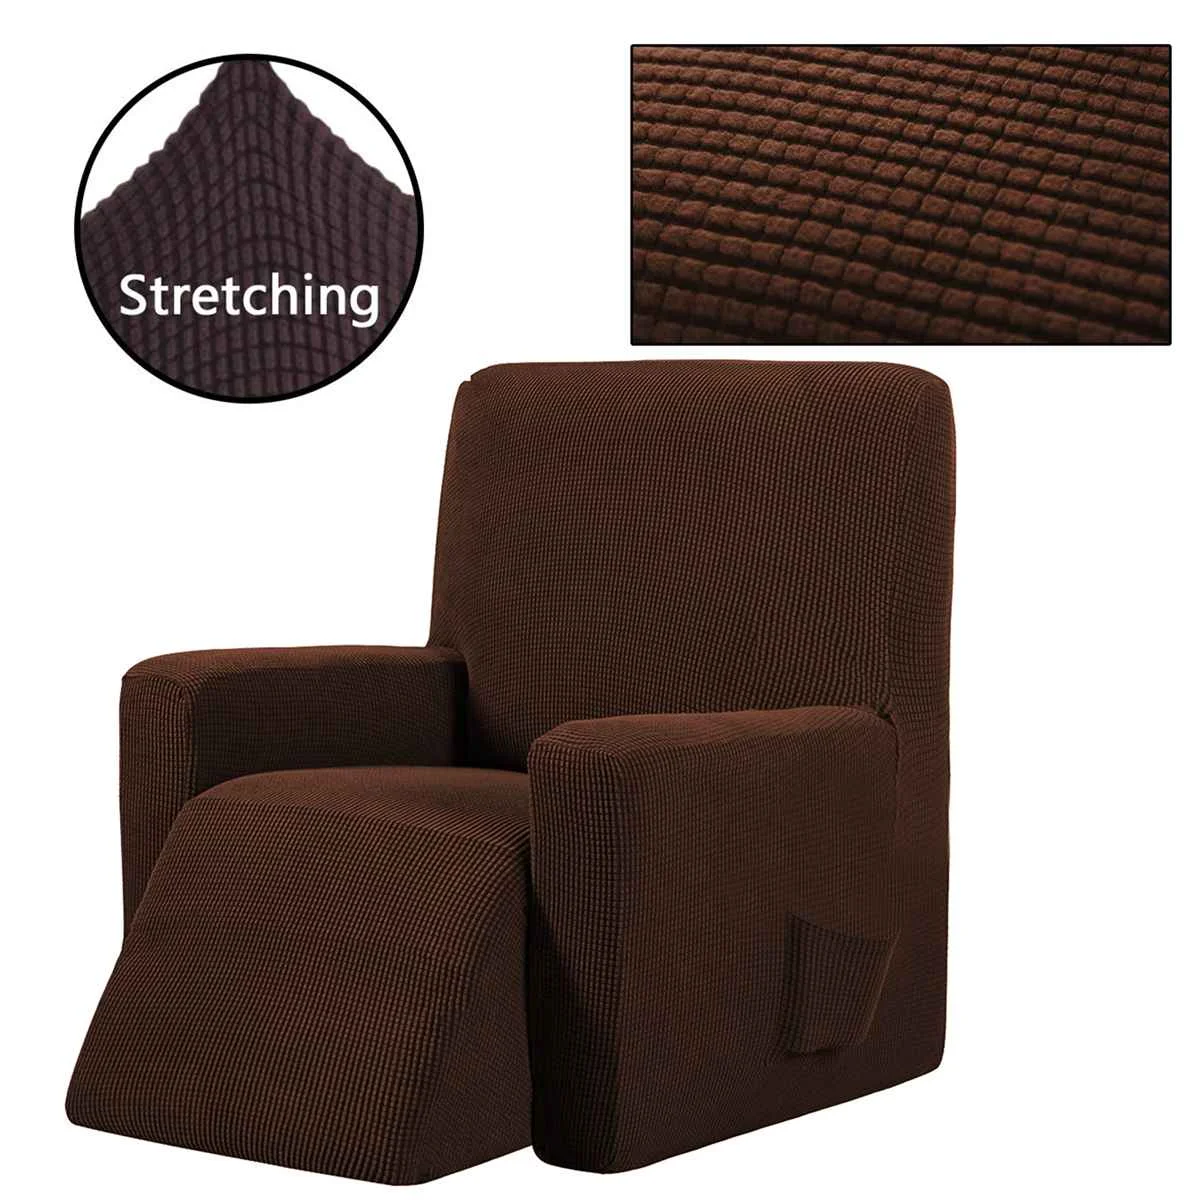 Анти-скольжения все включено диван-кровать стретчевые мебель чехлов стоматологическое кресло крышка протектор одноместное кресло в форме яйца кресло-диван кушетка - Цвет: Deep coffee